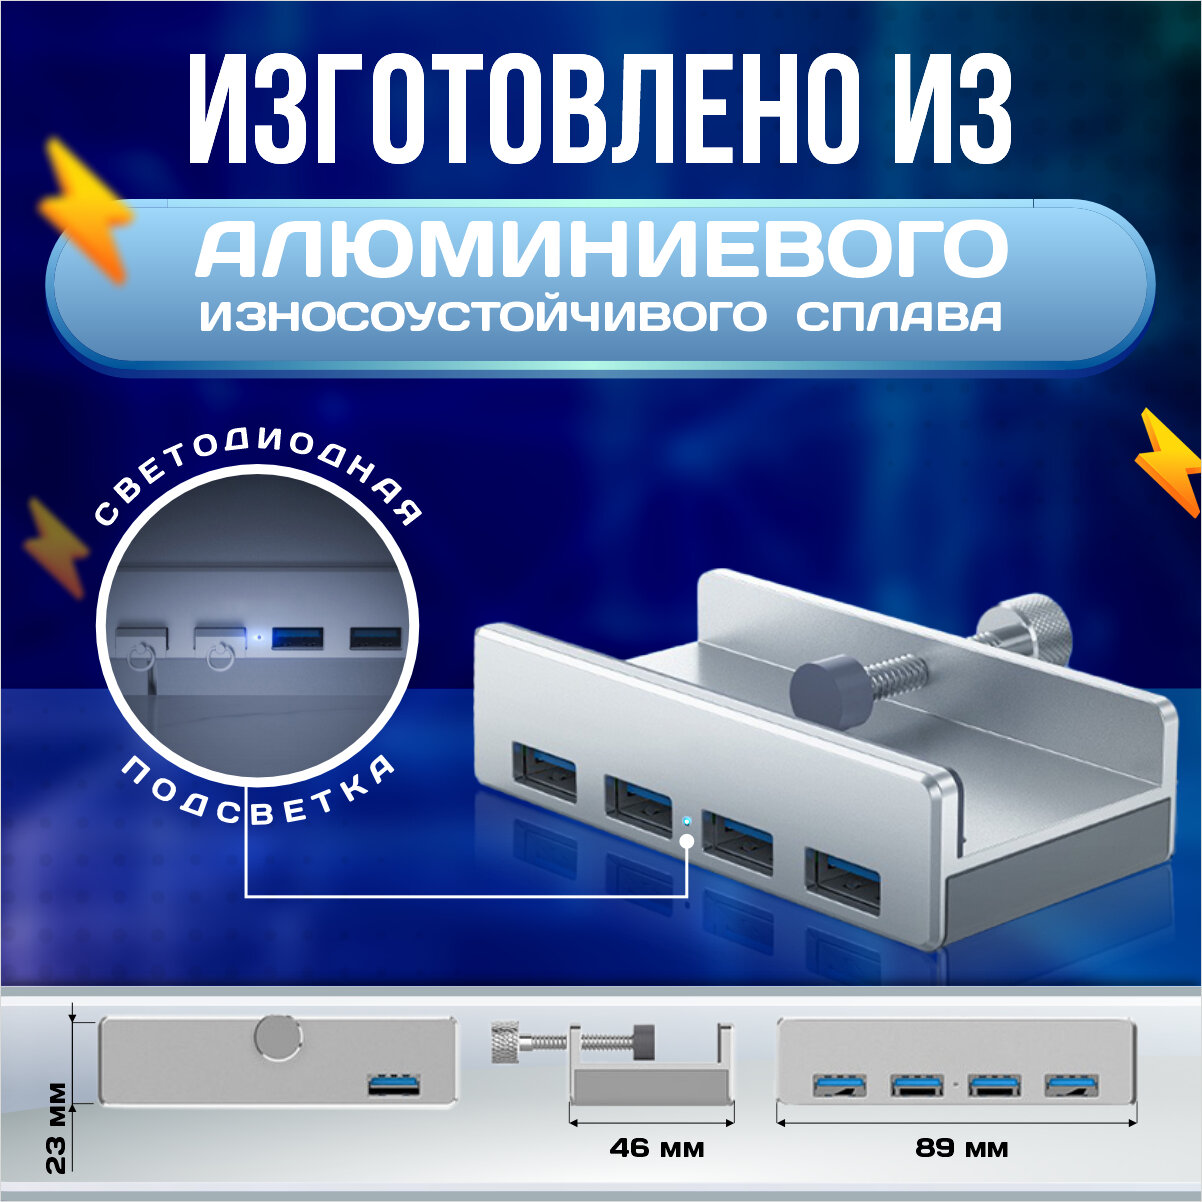 USB разветвитель USB Hub для периферийных устройств USB концентратор на 4 порта юсб хаб 30 для крепления на стол или к монитору